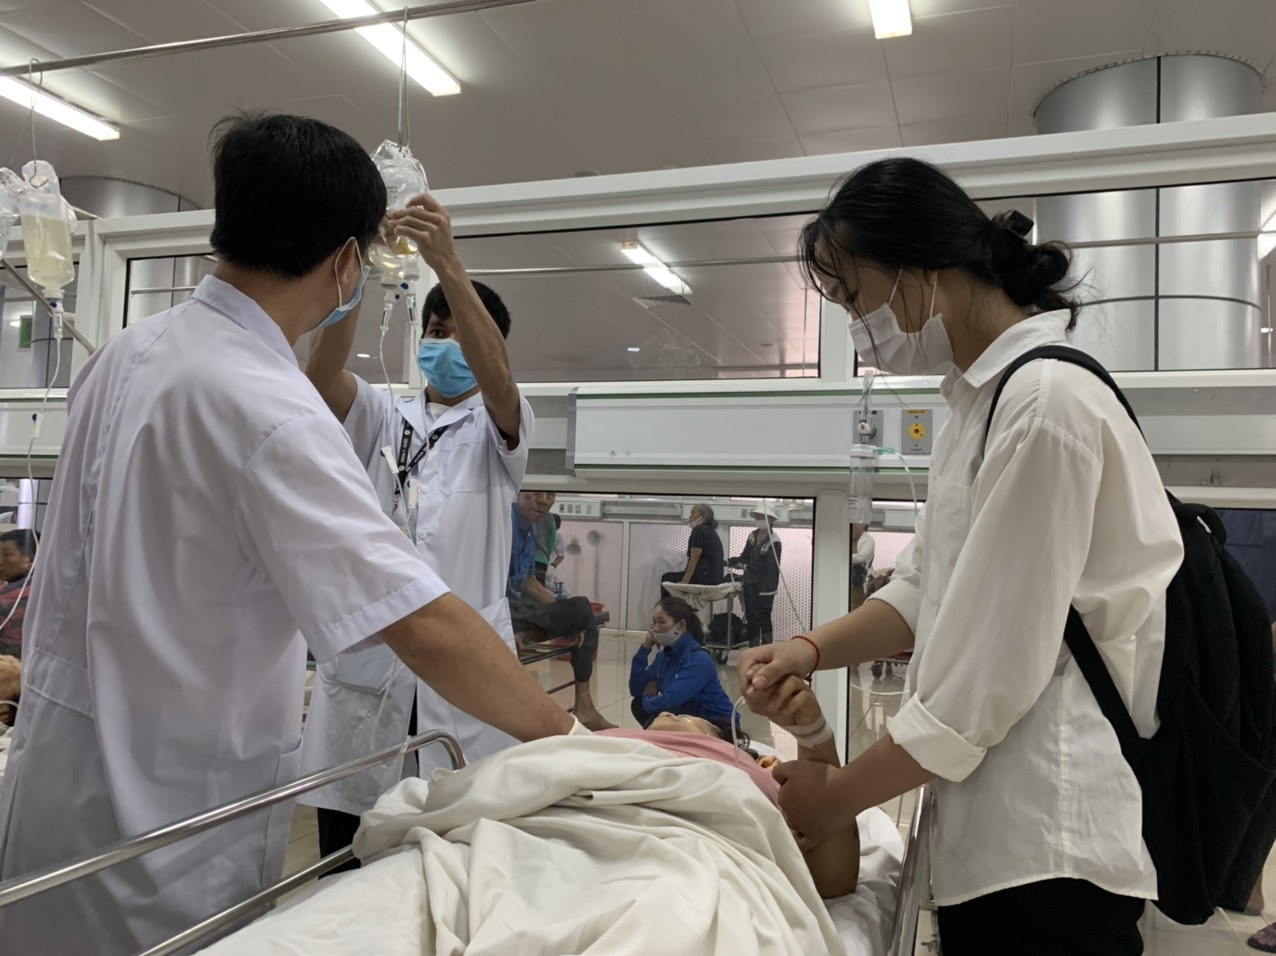 Hiện những nạn nhân trong vụ tai nạn đang được điều trị tại Bệnh viện Đa khoa Vùng Tây Nguyên.